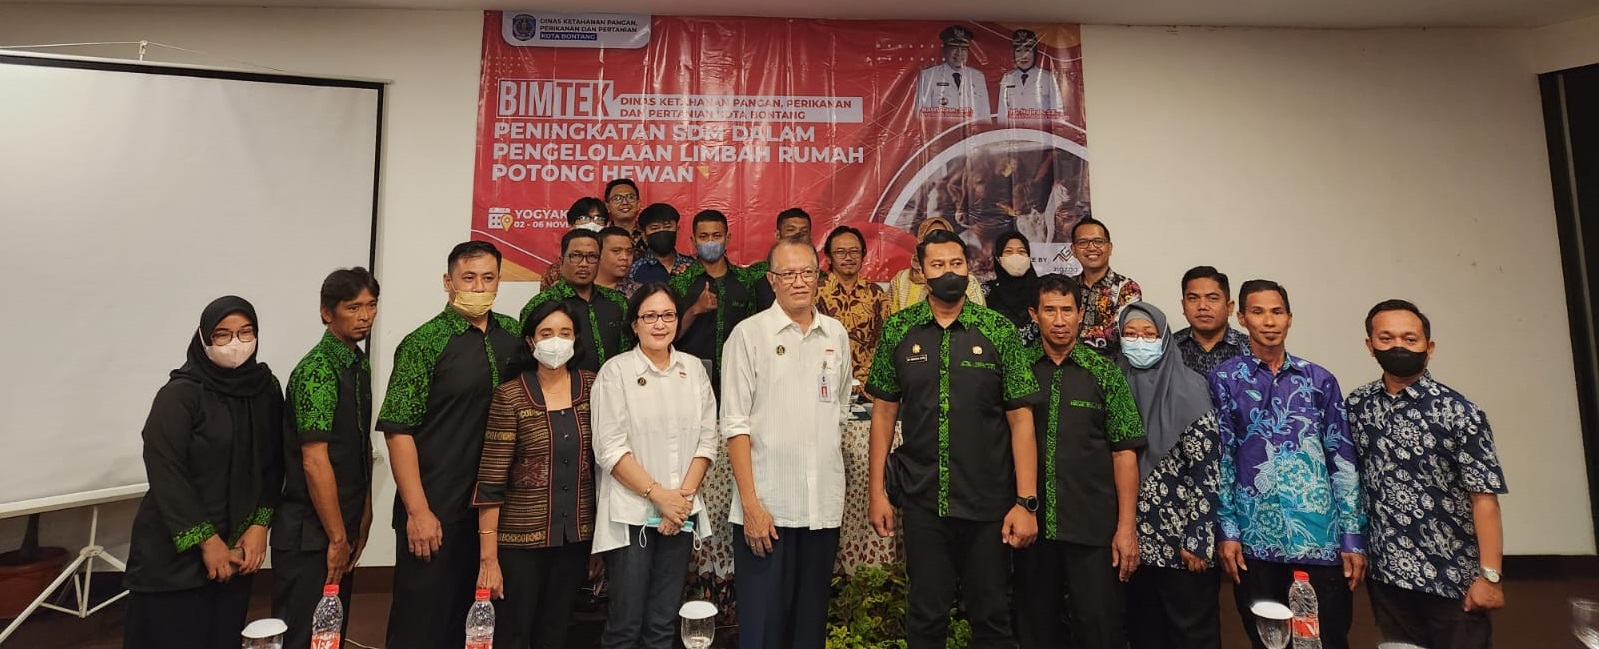 Bimbingan Teknis Peningkatan Sumber Daya Manusia dalam Pengelolaan Limbah RPH di RPH Giwangan Kota Yogyakarta